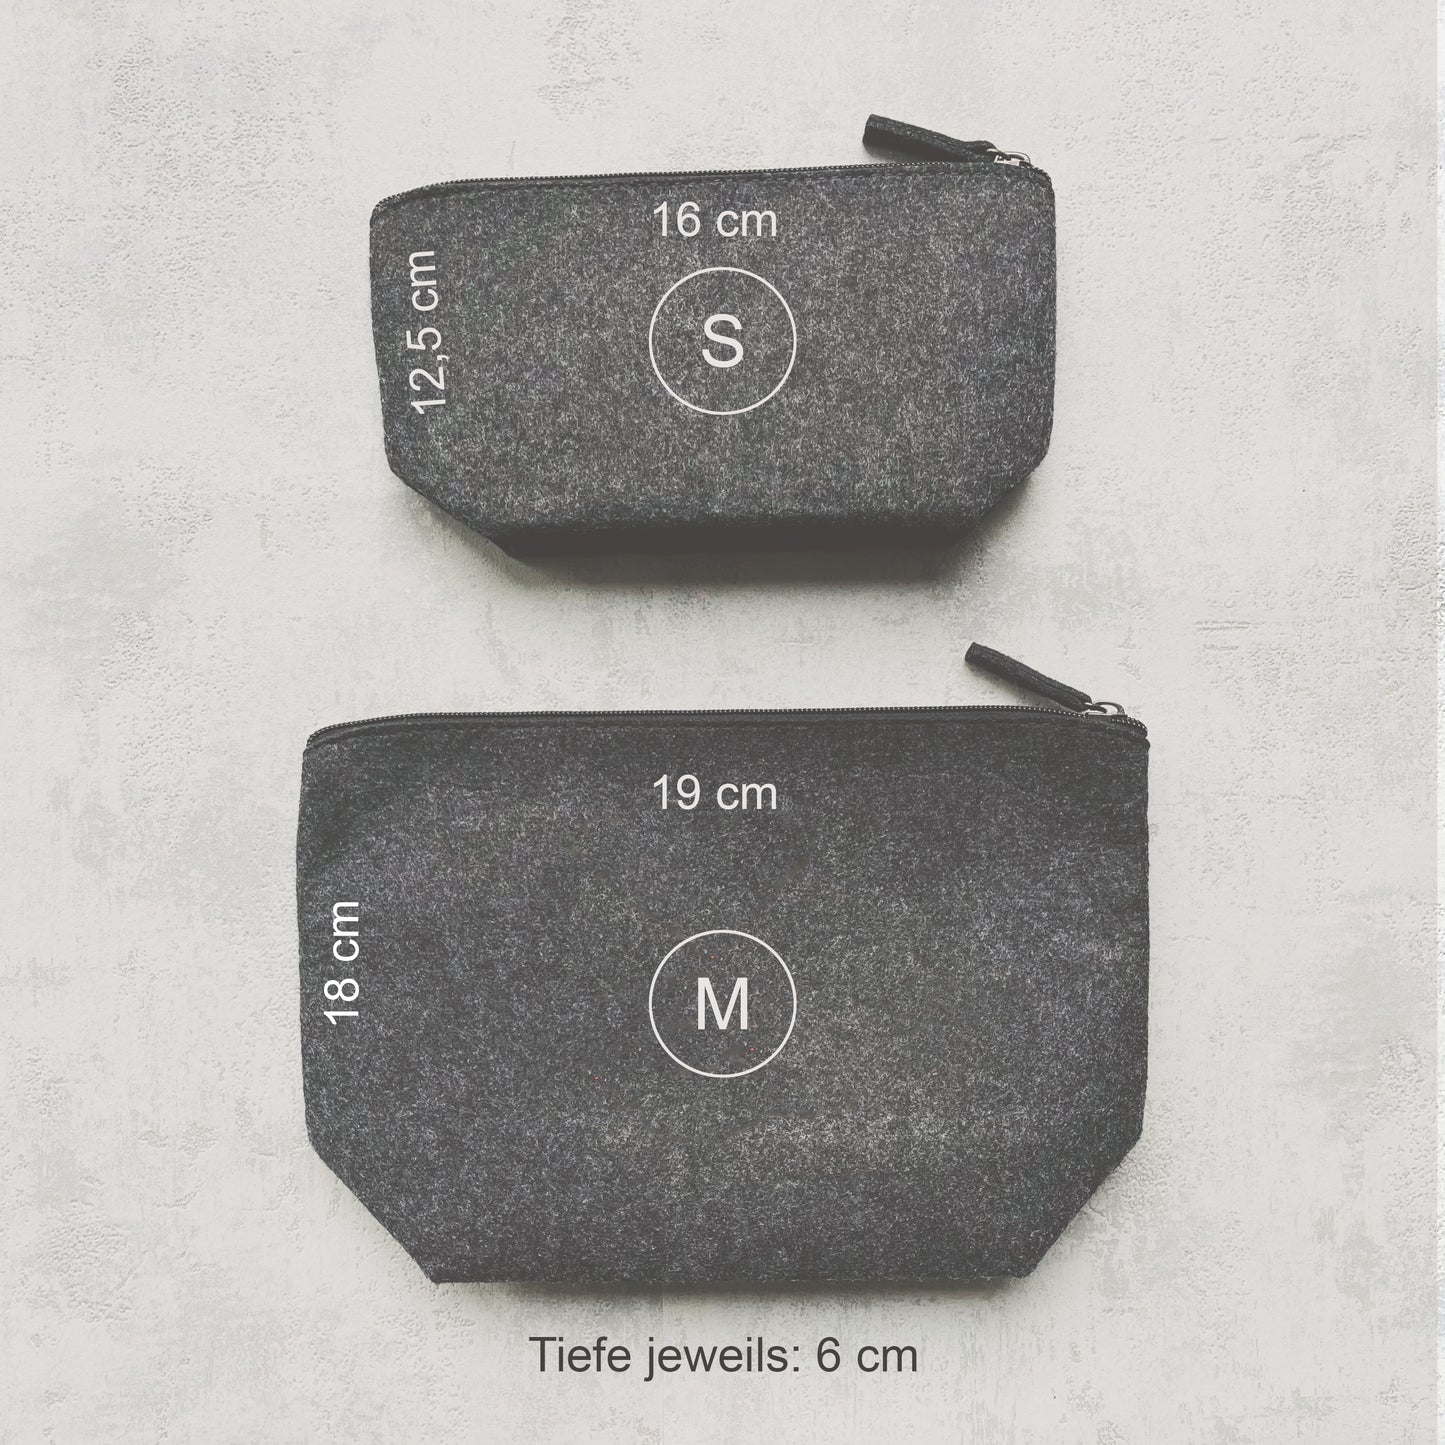 Größenvergleich zweier grauen Filztaschen in S (12,5 x 16 cm) und M (18 x 19 cm)